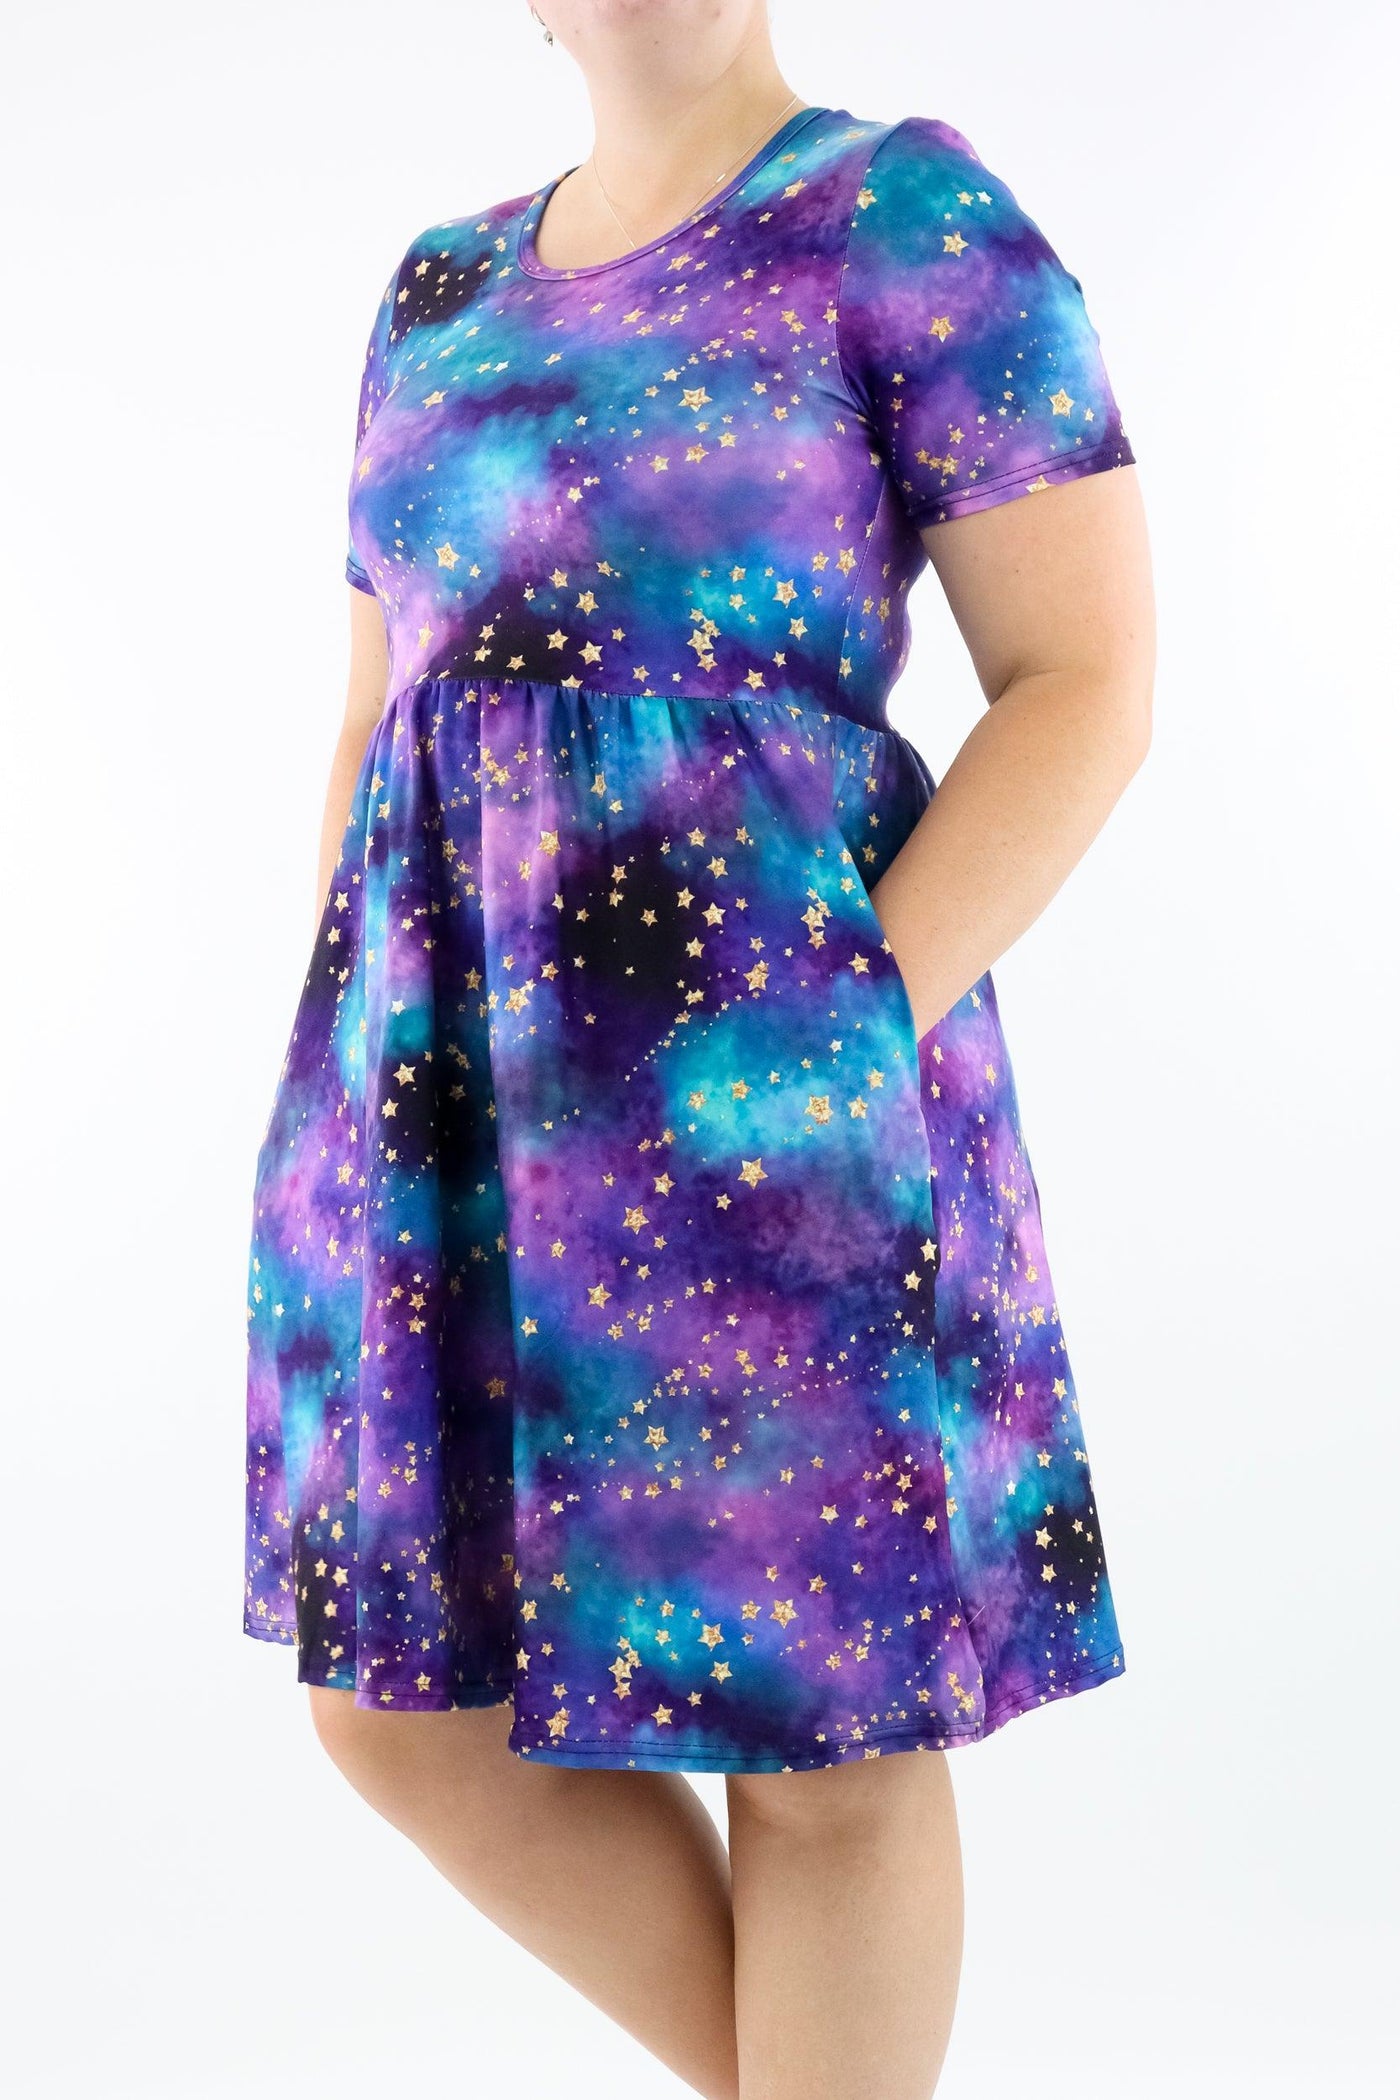 Universe Shimmer - Short Sleeve Skater Dress - Knee Length - Side Pockets - Pawlie